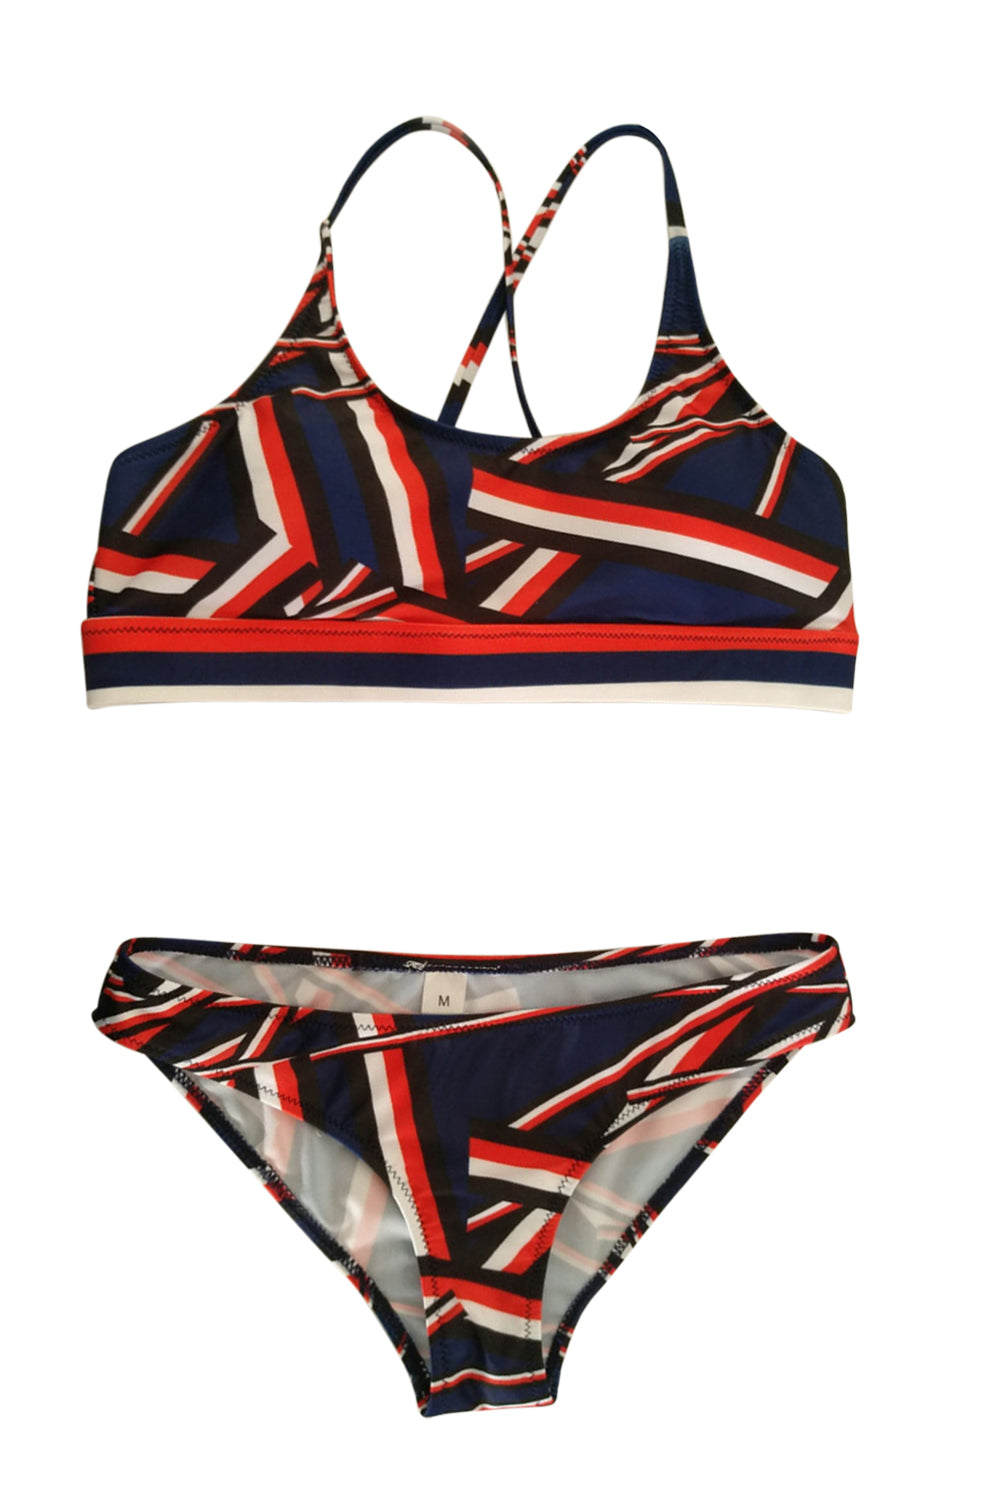 Iyasson Trandy Sport Style Geometric Pattern Bikini Sets